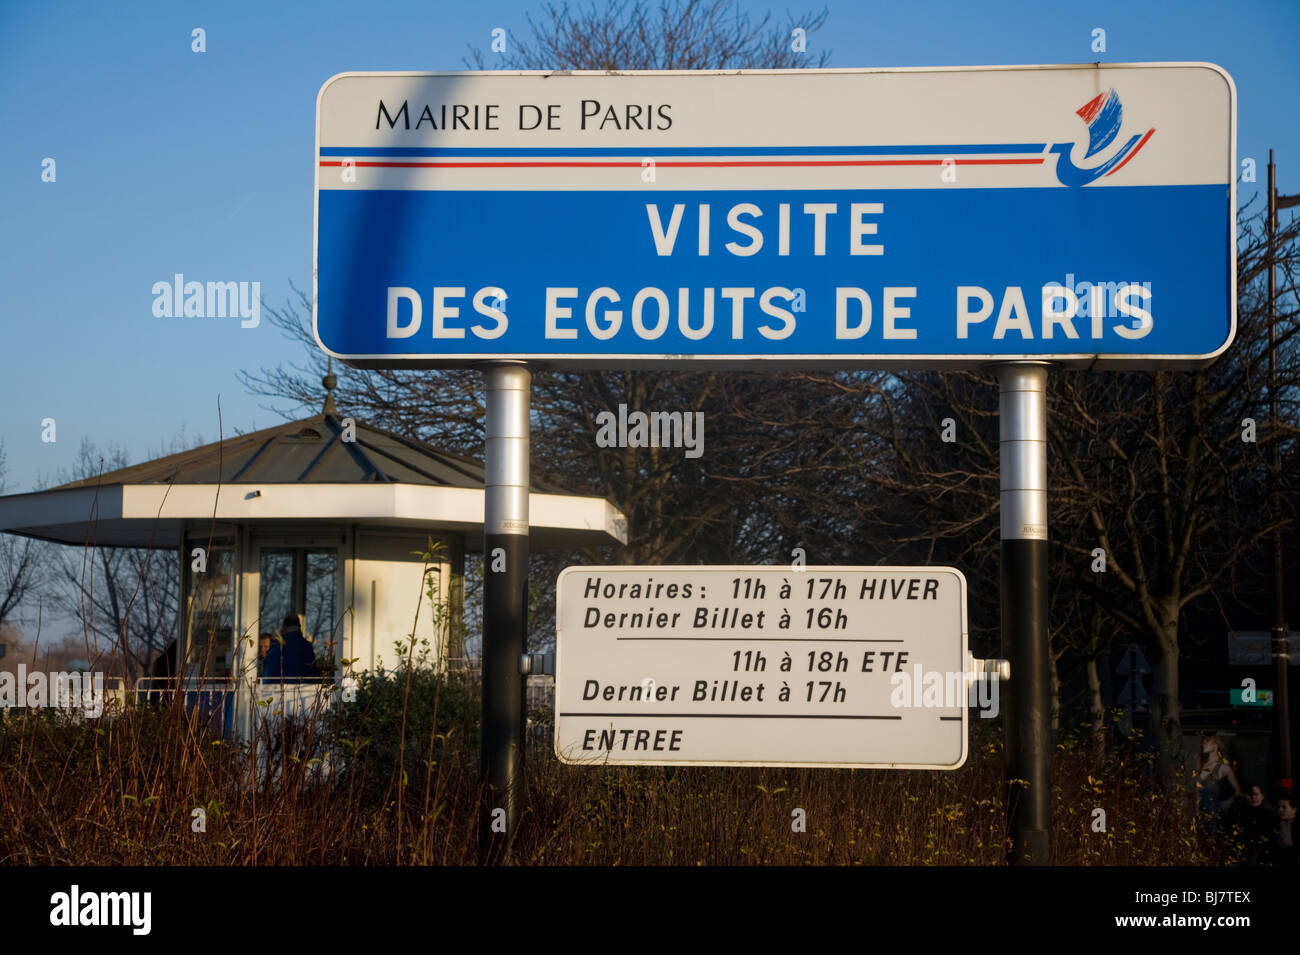 Schild über dem Eingang der Tourist Tour der Kanalisation Paris-Visite Des Egouts De Paris / Kanalisation Museumsbesuch in Paris, Frankreich. Stockfoto